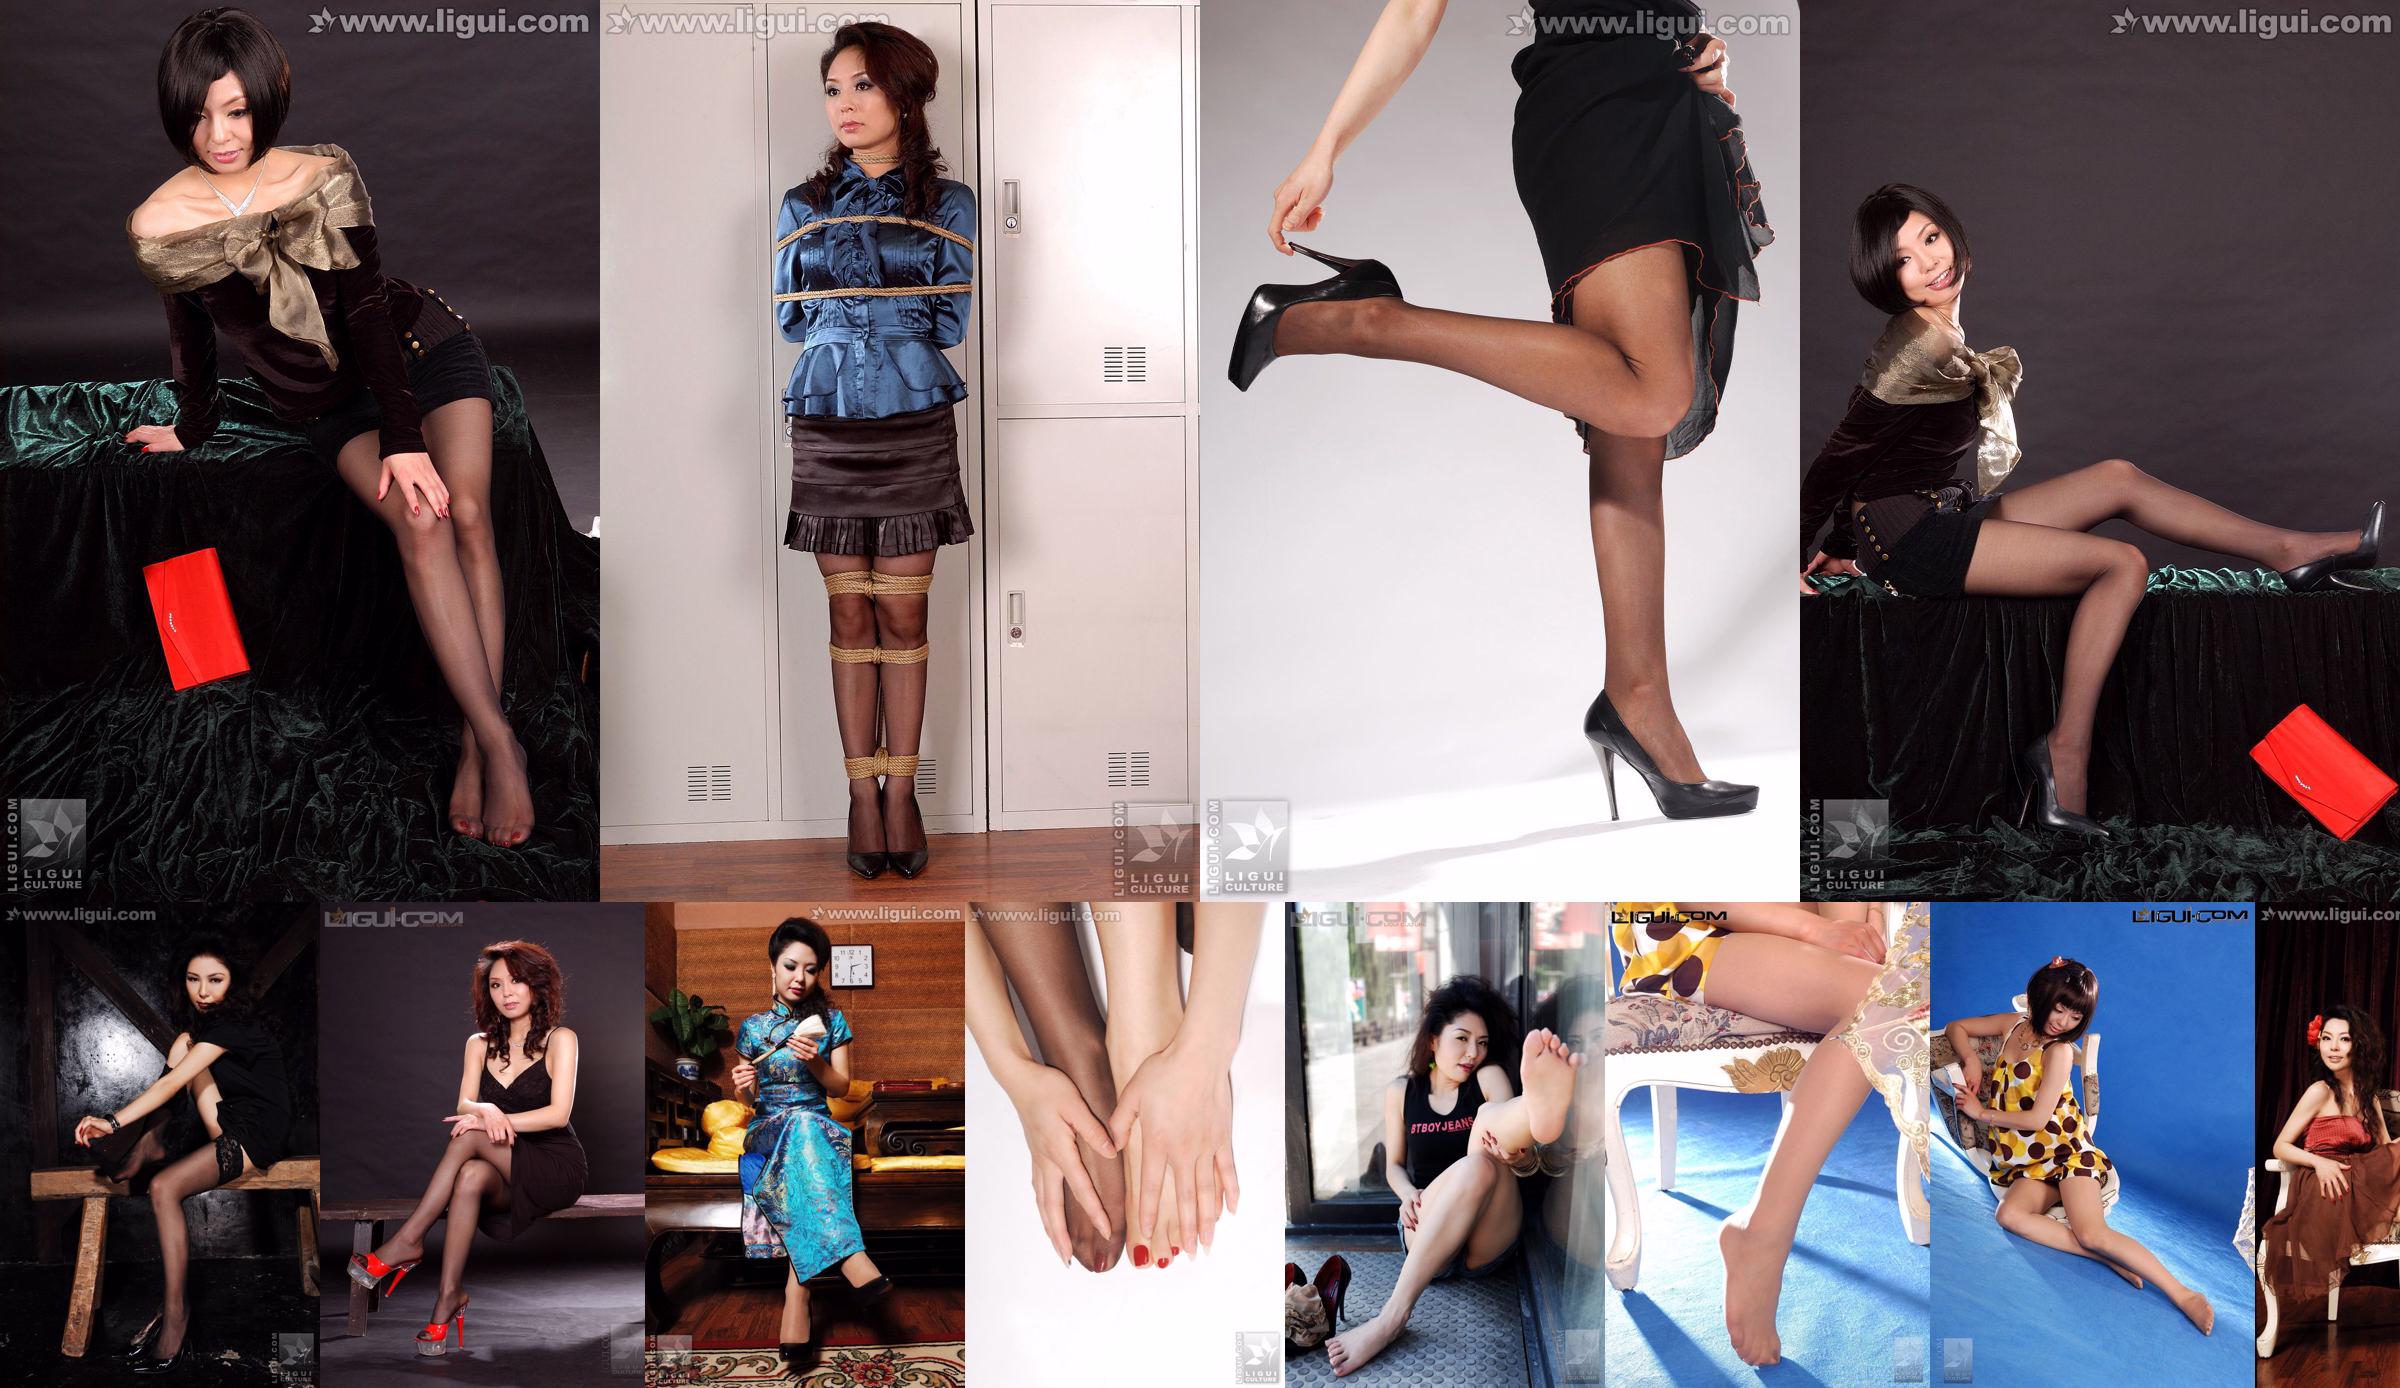 Model Bing Qing "Pemotretan Jalanan Jeans dan Stoking" [丽 柜 LiGui] Silky Foot Photo No.bc4198 Halaman 1